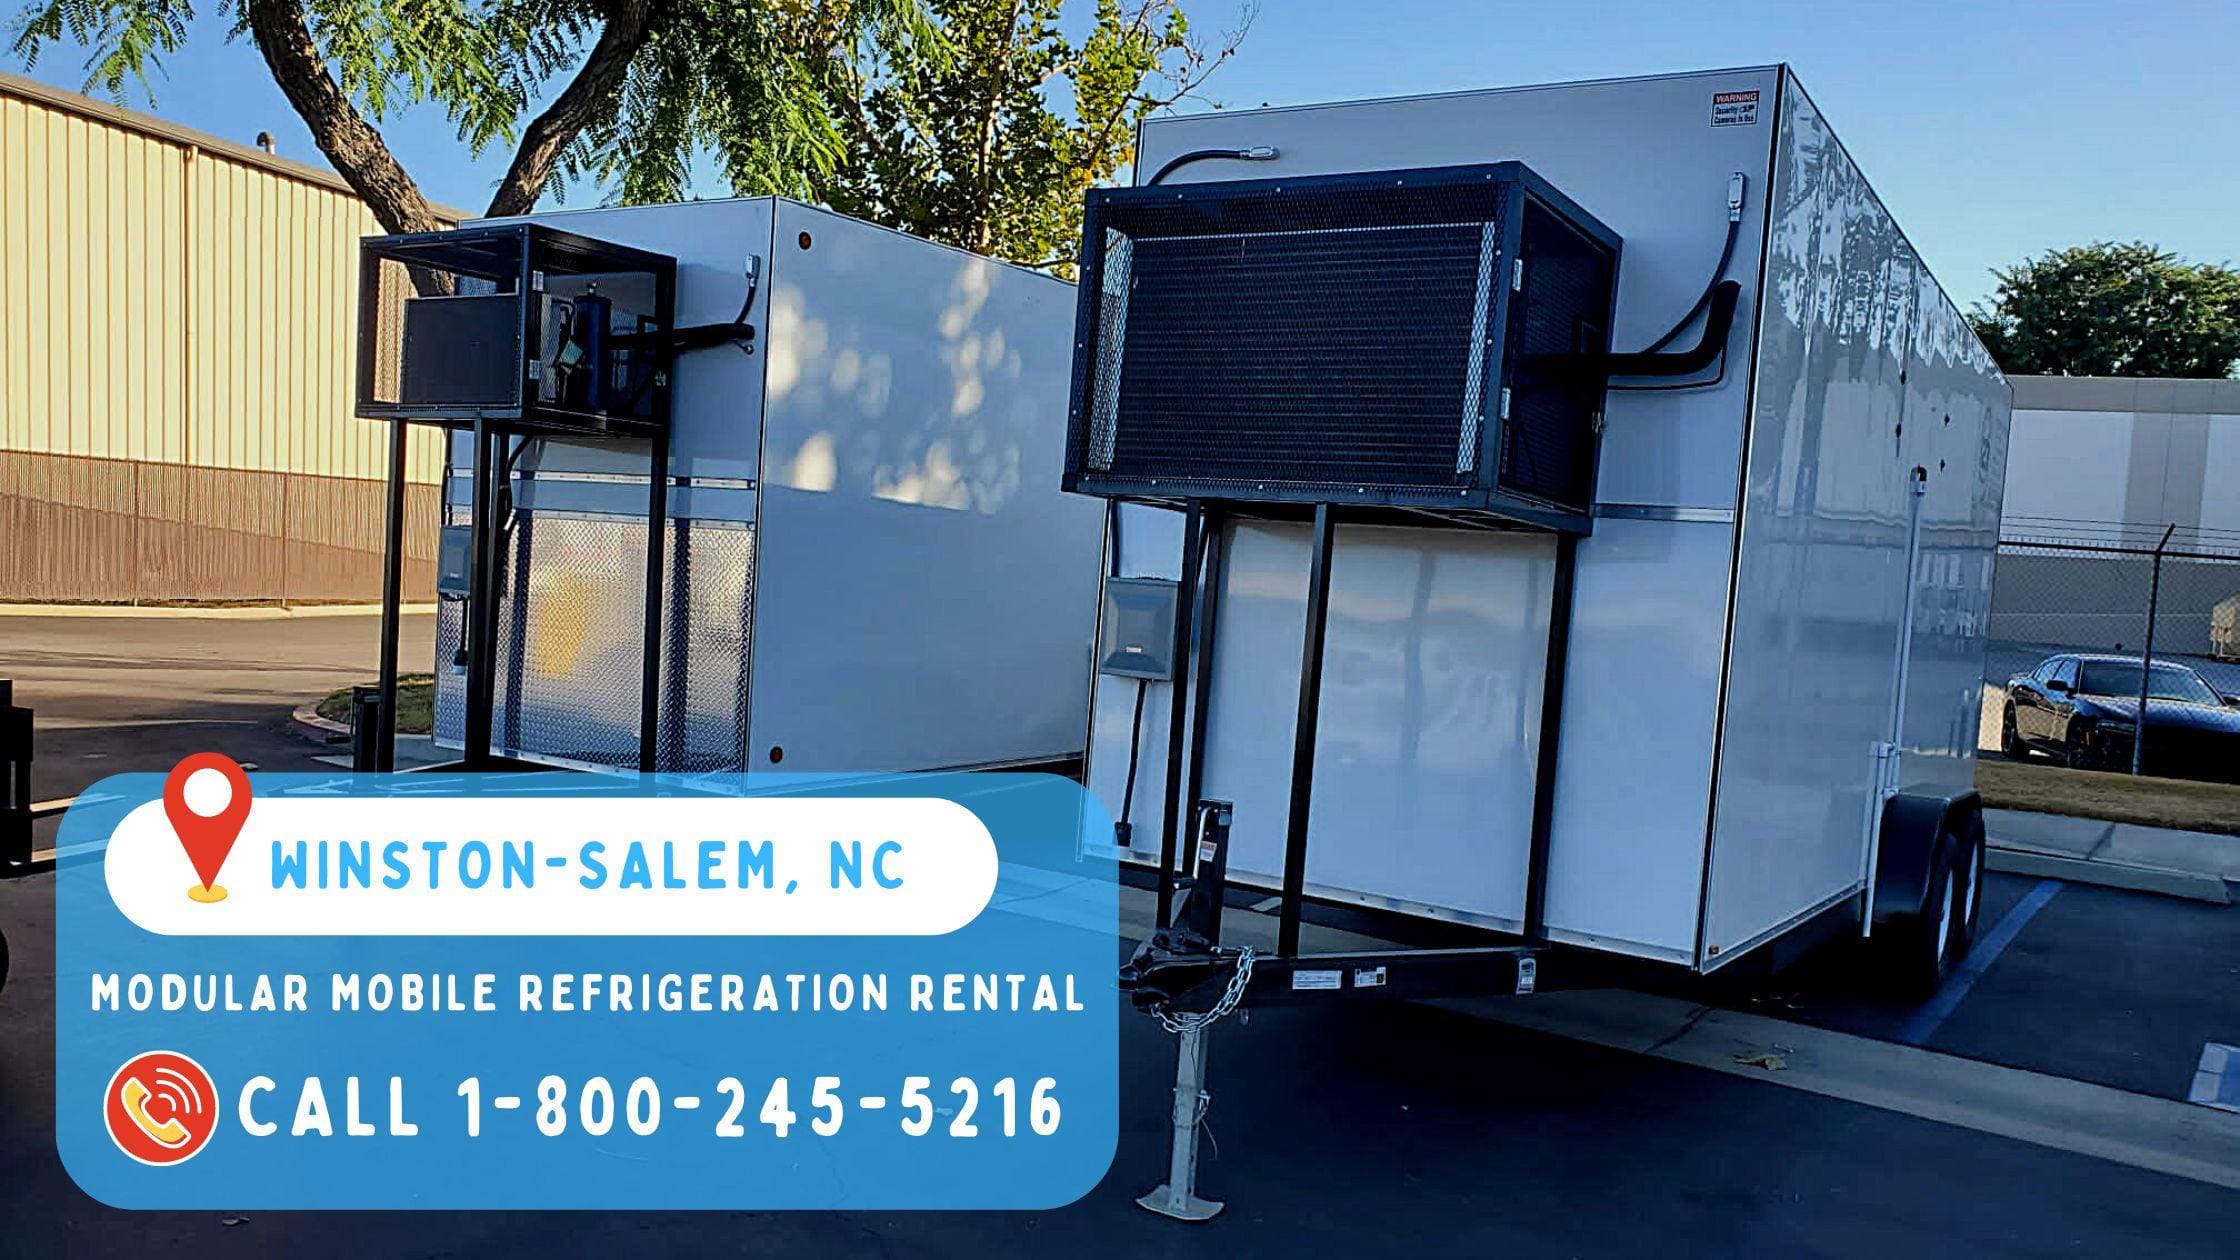 Modular Mobile Refrigeration Rental in Winston-Salem